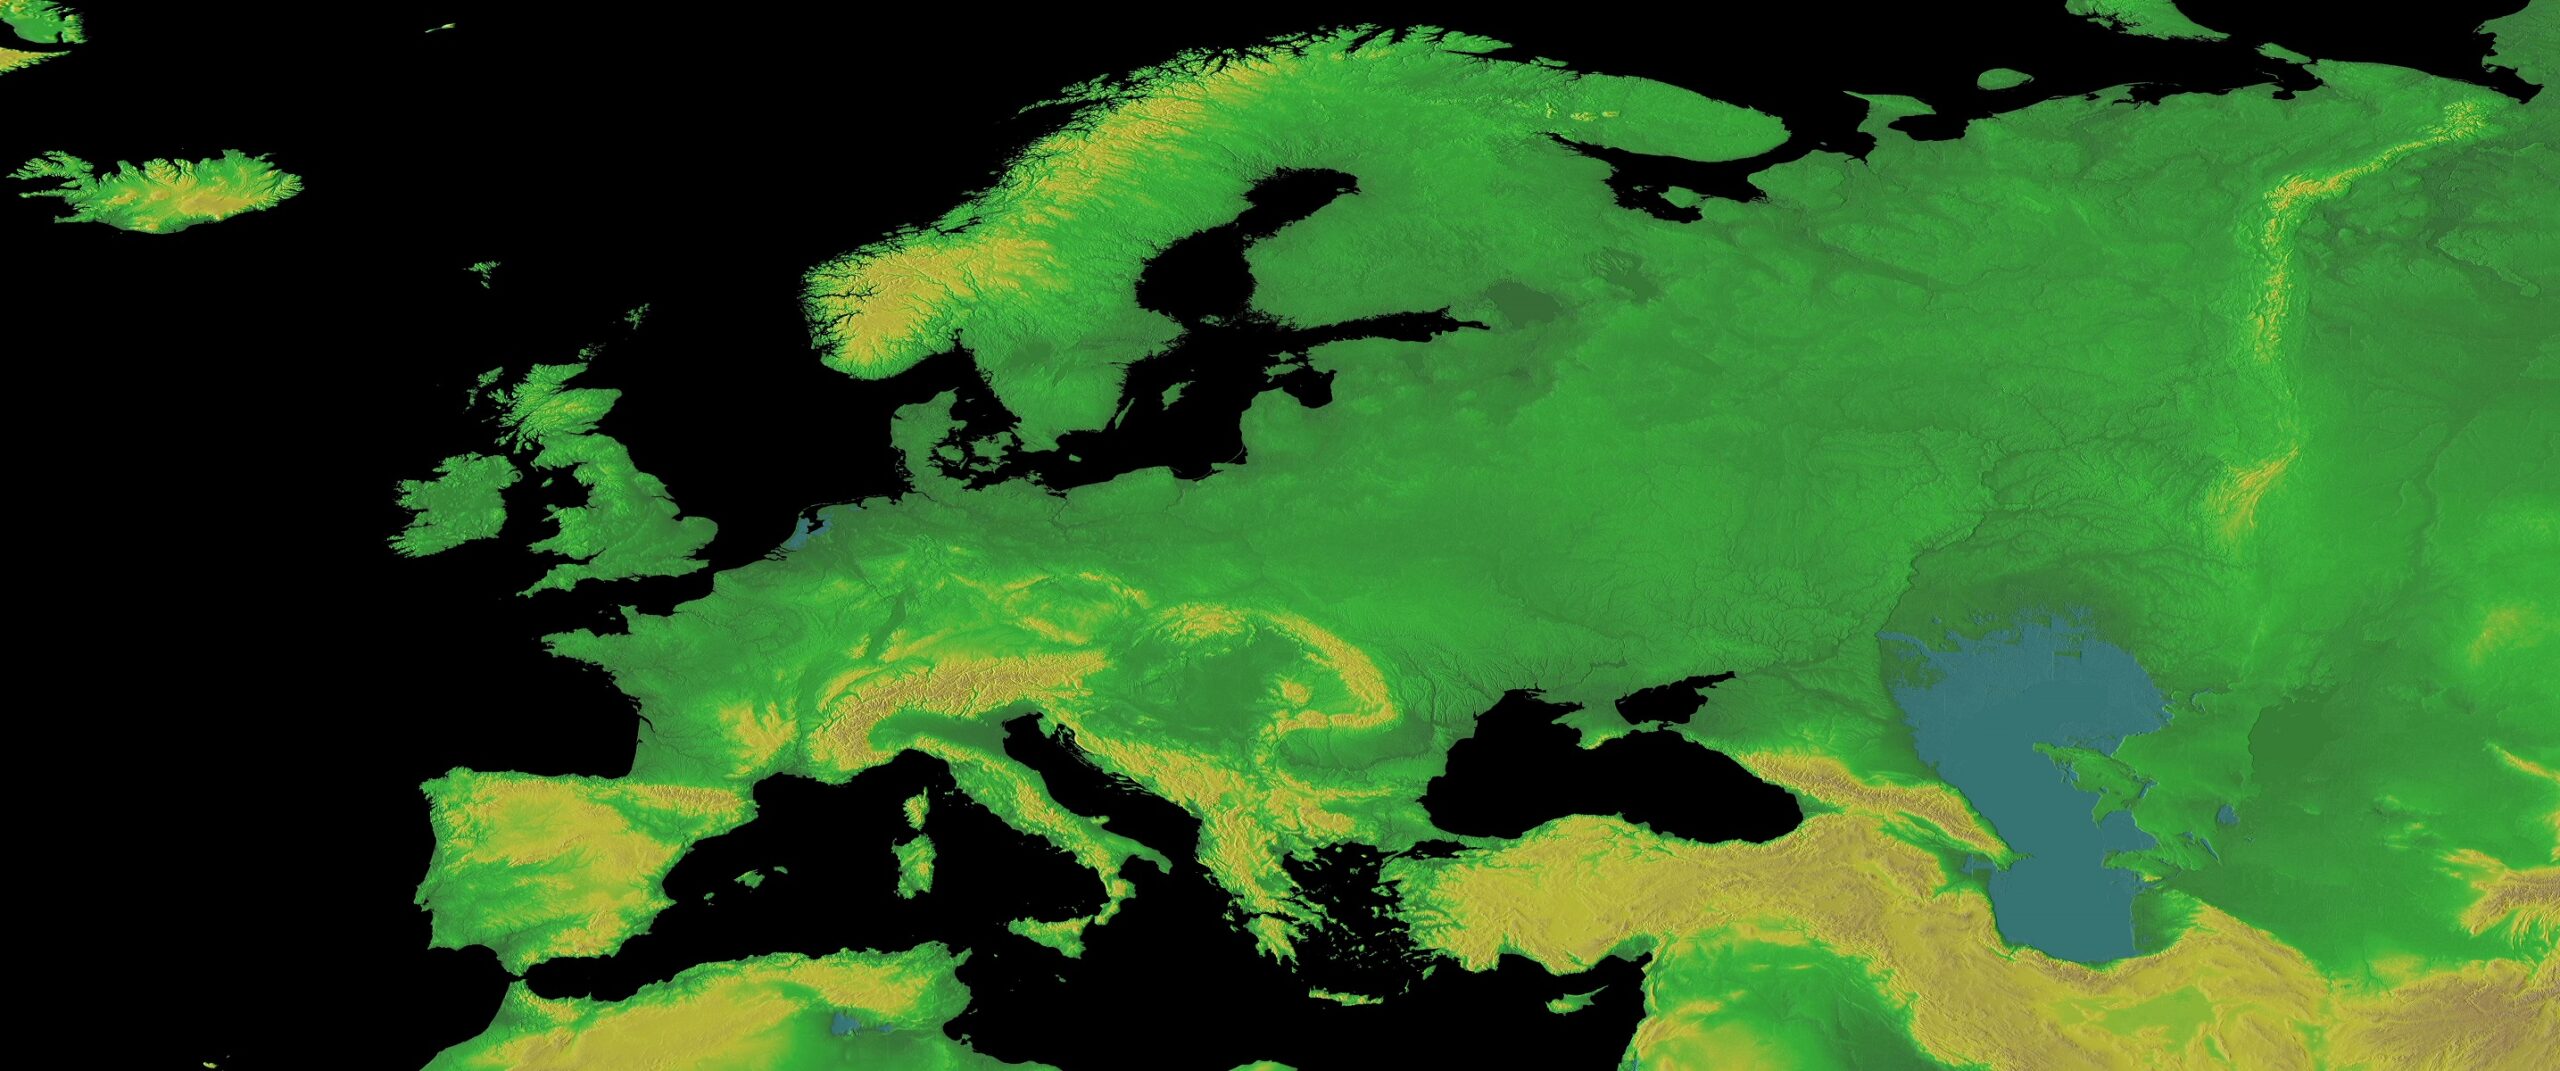 Elevation Maps Europe